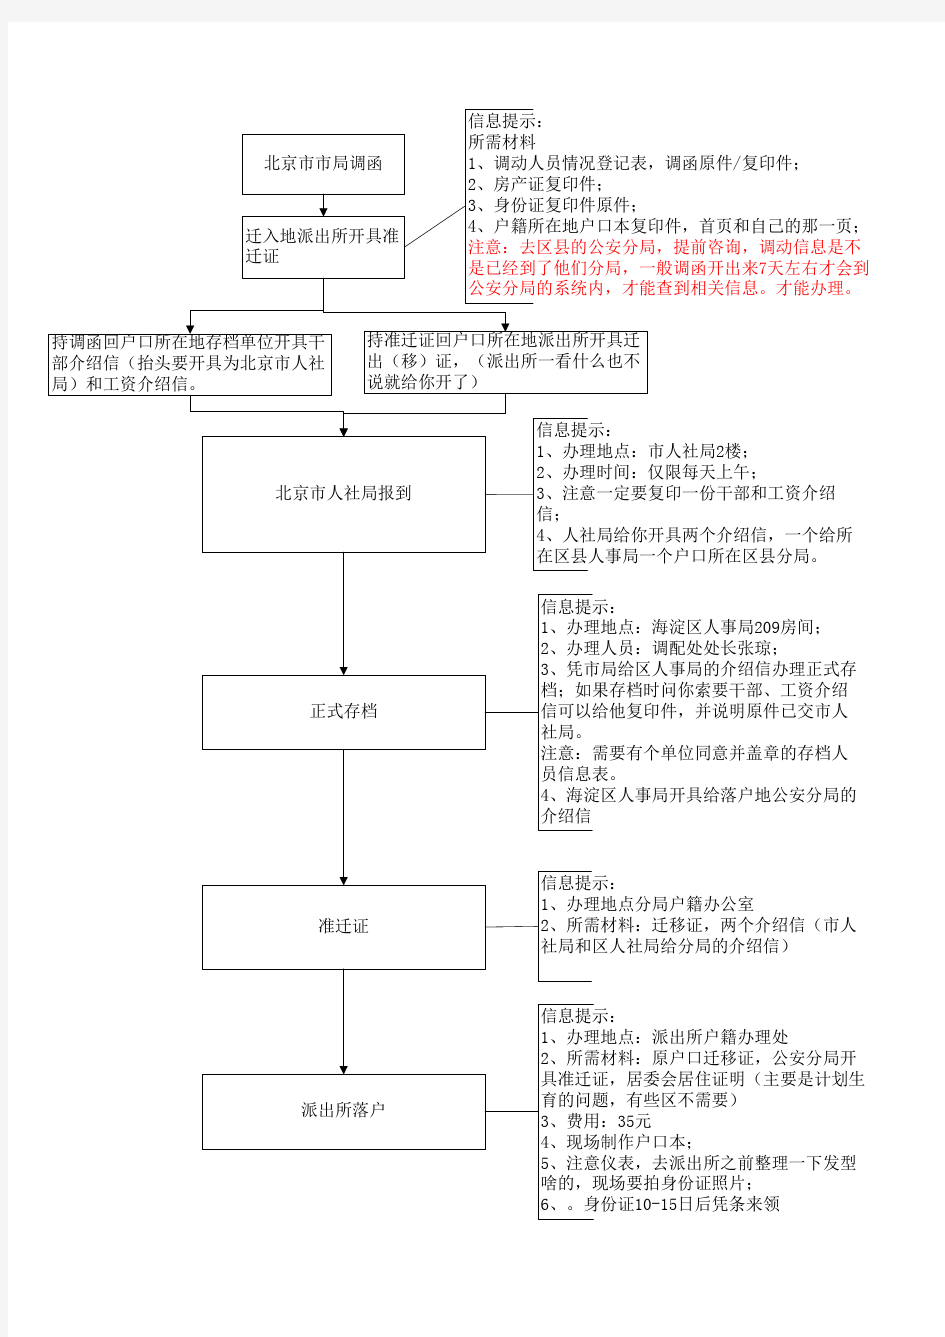 北京人才引进落户流程图--资料